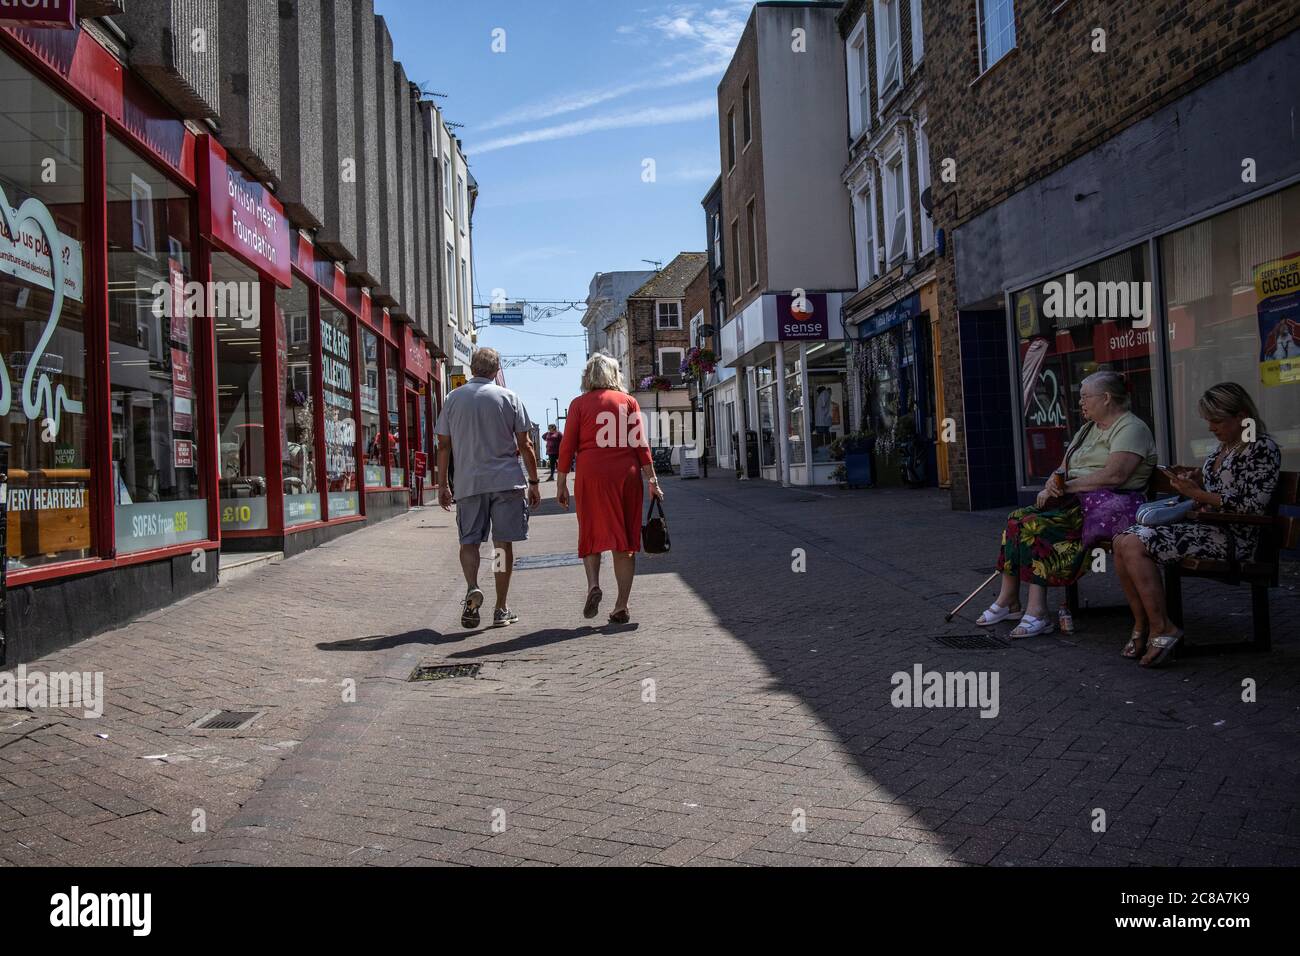 La città balneare inglese di Margate mostra segni di recupero dopo il blocco coronavirus con turisti e locali in visita alla città costiera, Kent, Regno Unito Foto Stock